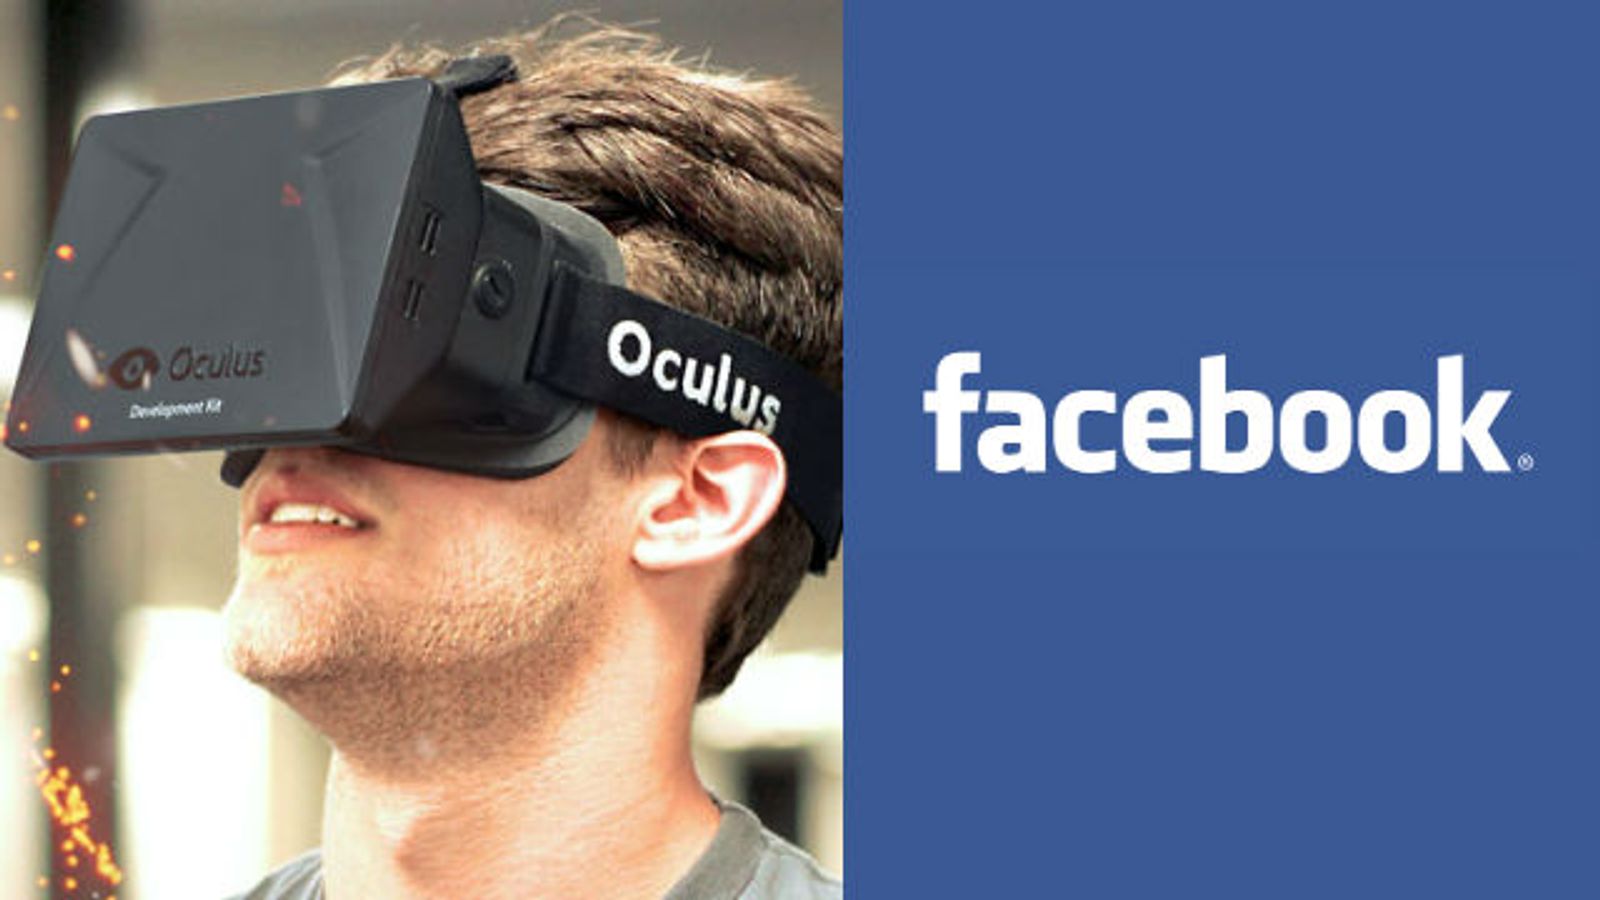 Facebook Ponies Up $2 Billion for Oculus VR